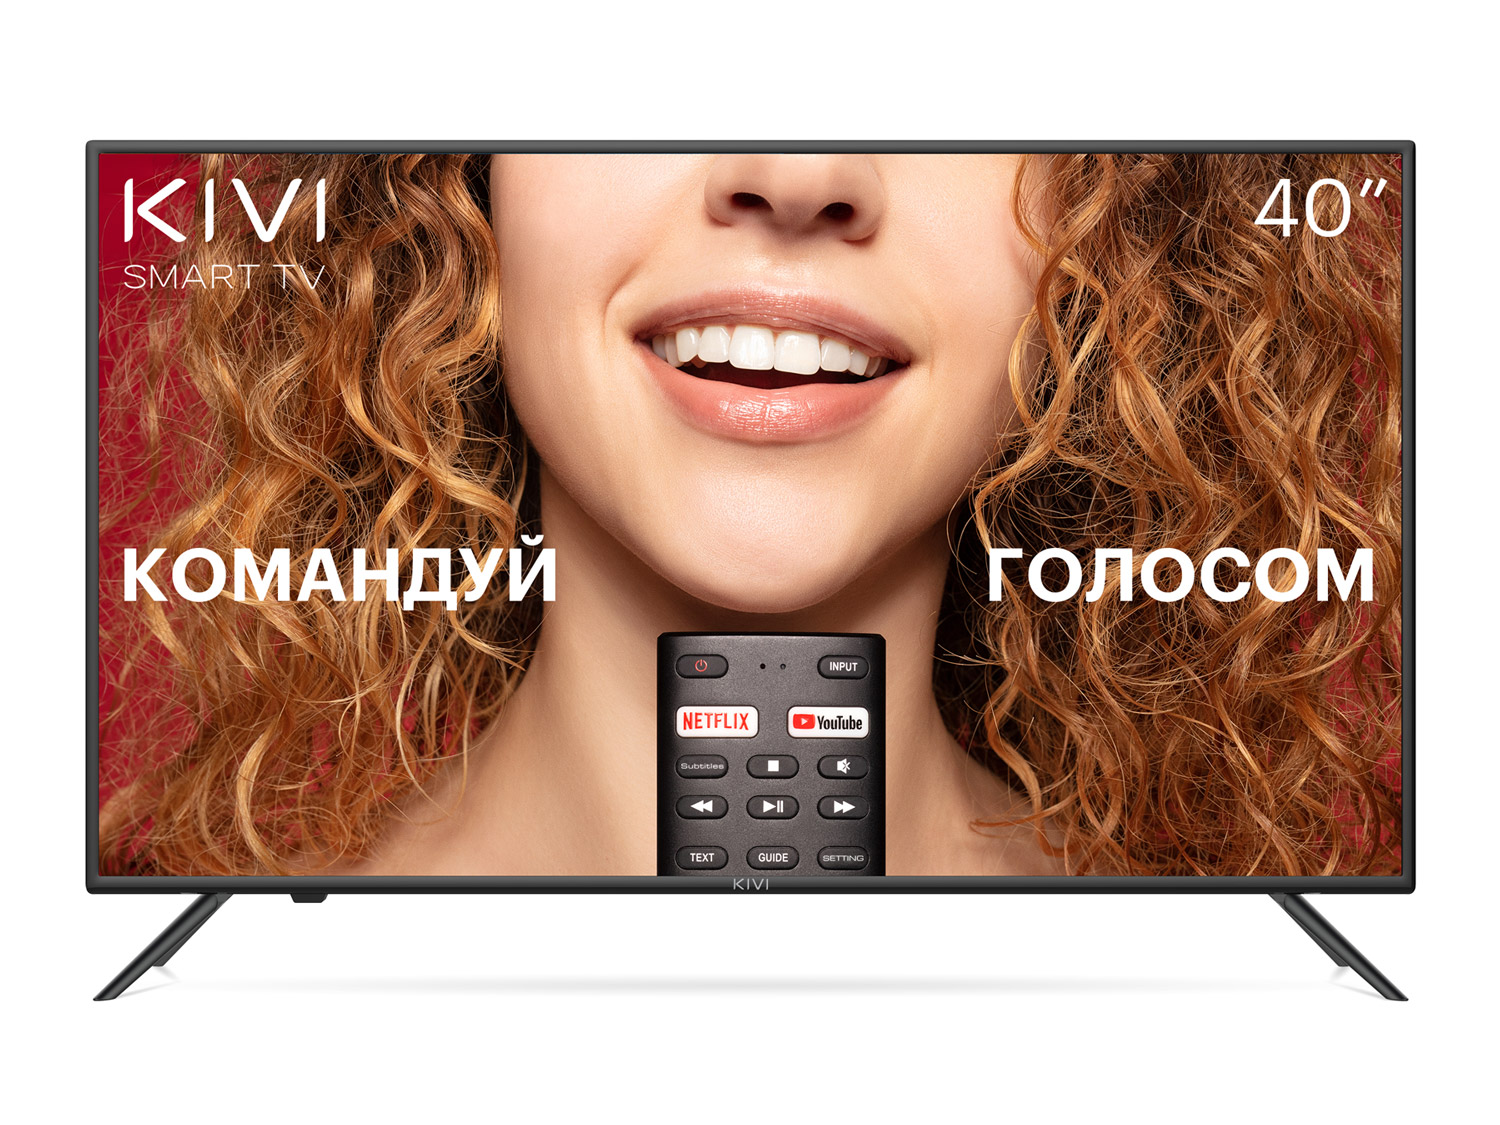 Ставка на Android TV и голосовое управление: KIVI представила в Украине новую линейку телевизоров